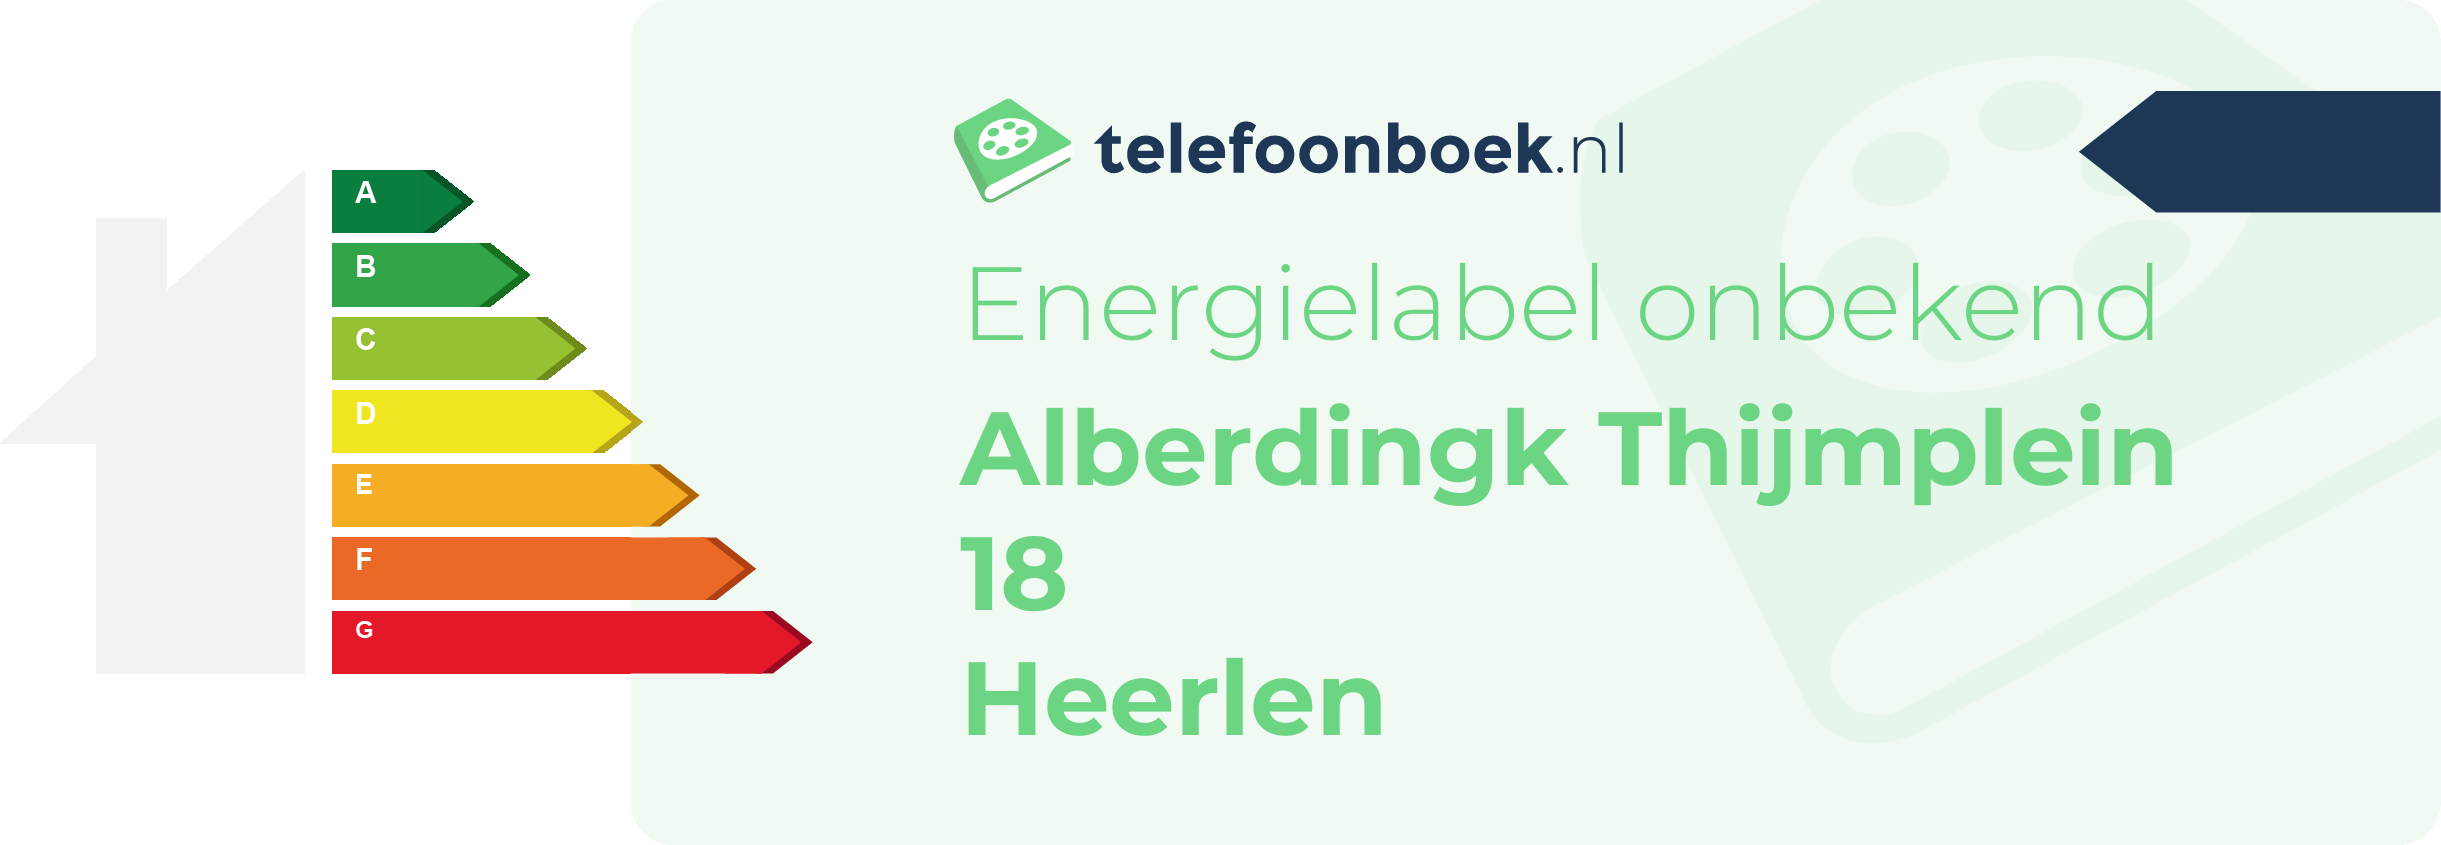 Energielabel Alberdingk Thijmplein 18 Heerlen